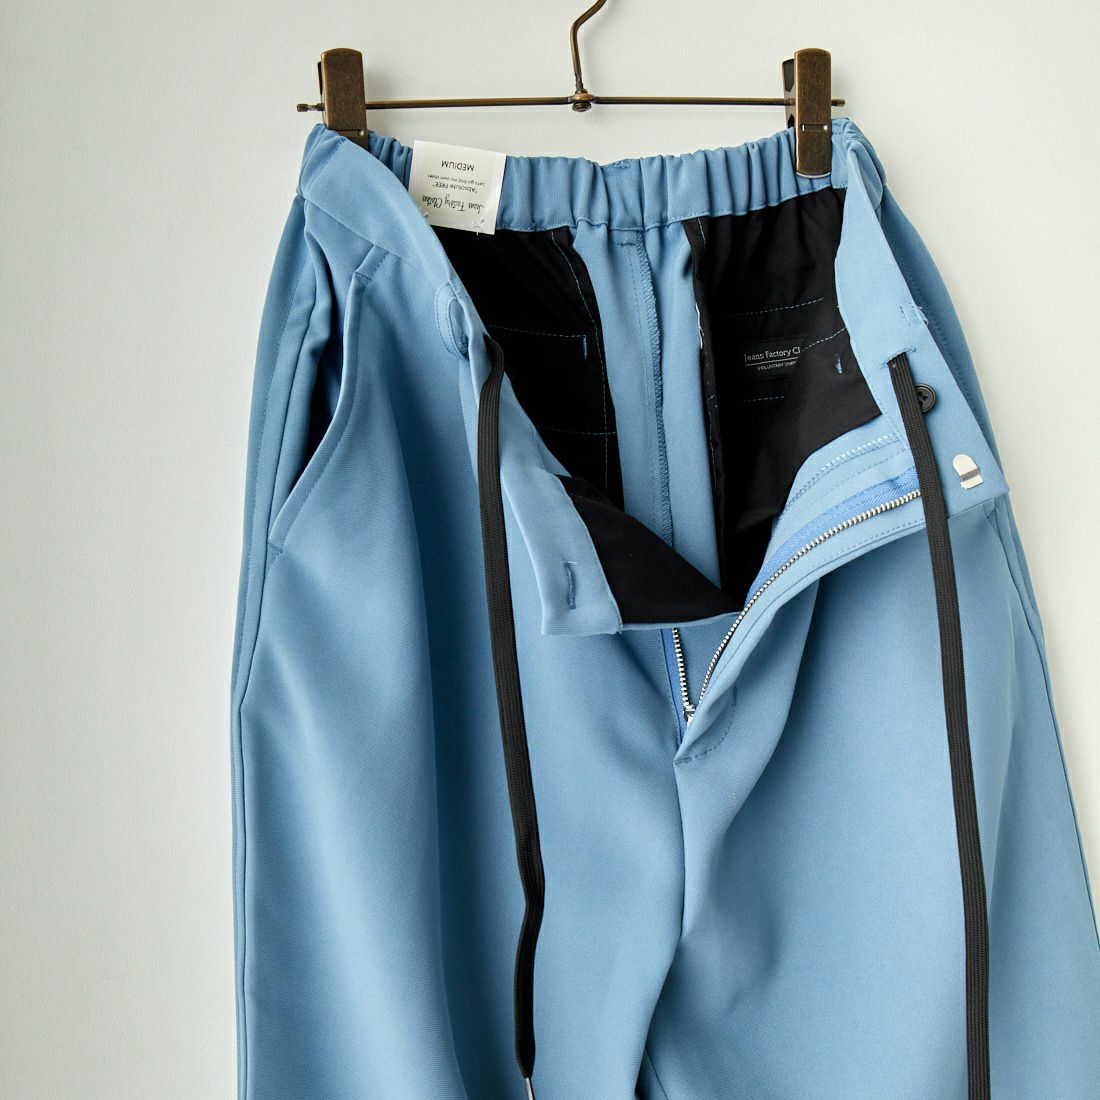 Jeans Factory Clothes [ジーンズファクトリークローズ] TECH カルゼワイドテーパードパンツ [EPC-31501] 2 BLUE